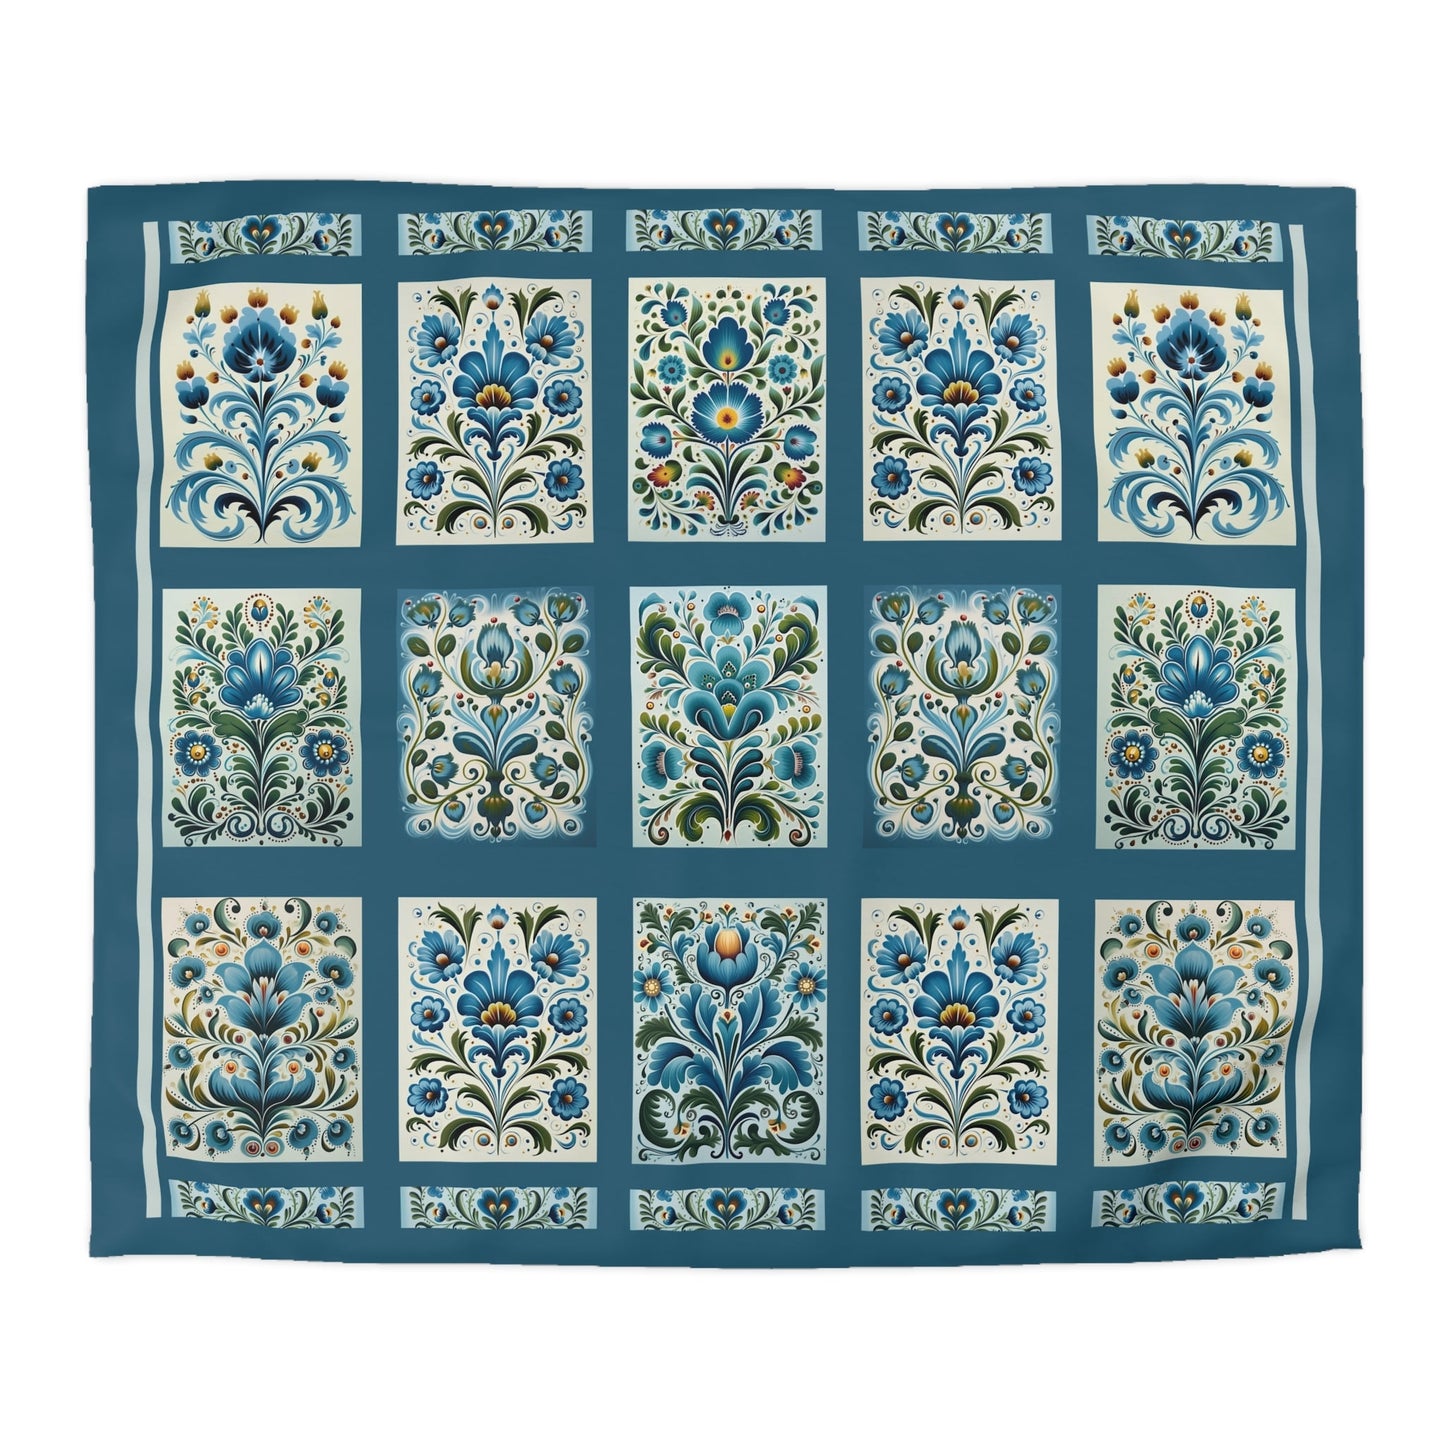 King - Queen Duvet - Scandi Blue Folk Art Design, Original Scandinavian Style Coverlet - FlooredByArt